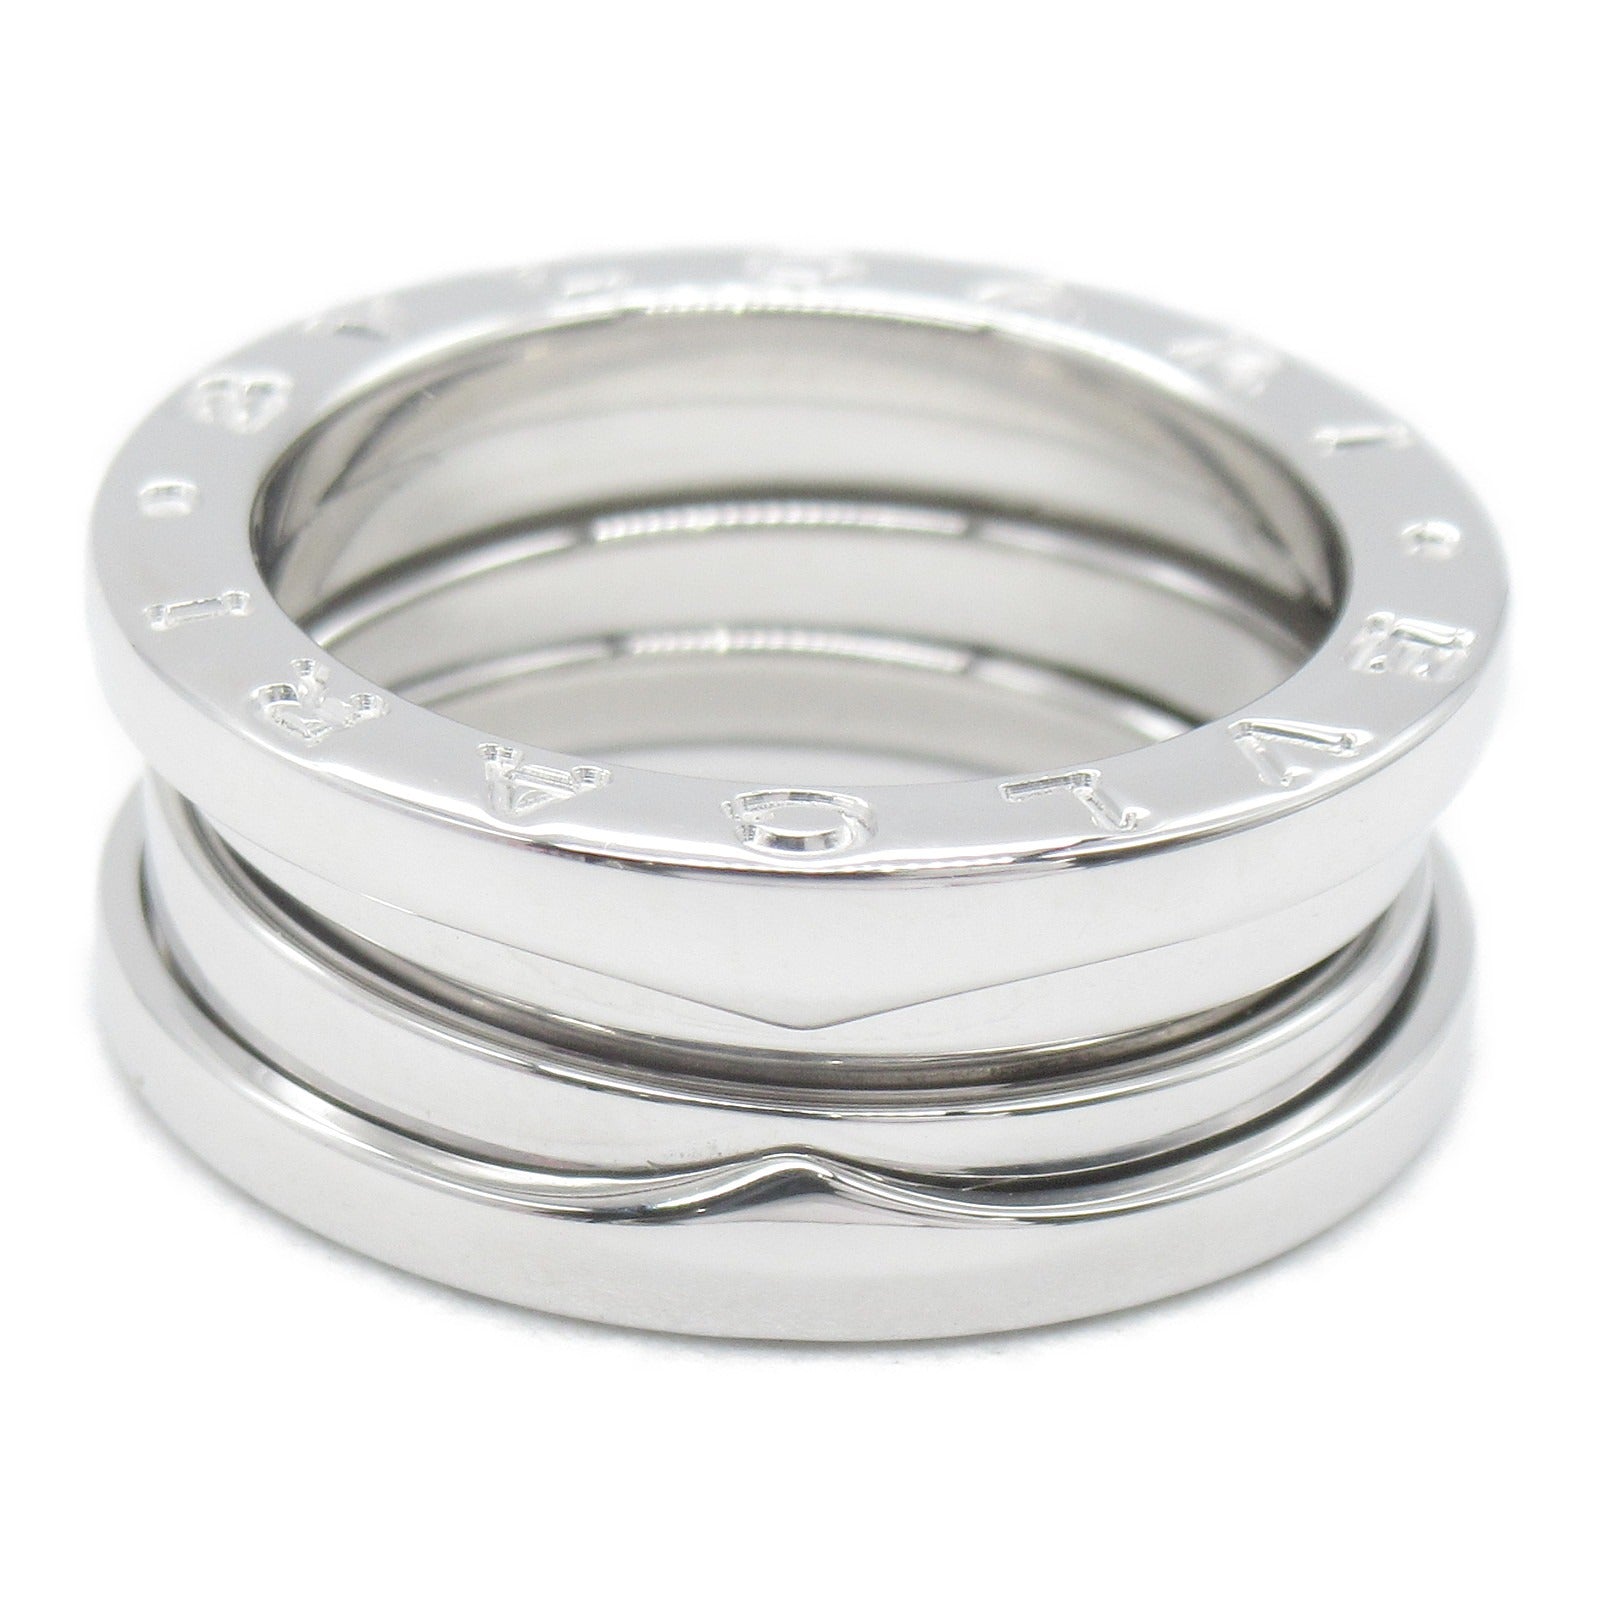 Bulgari BVLGARI B-zero1 Beezero One 3 Band Ring Ring Ring Ring Jewelry K18WG (White G)   Silver